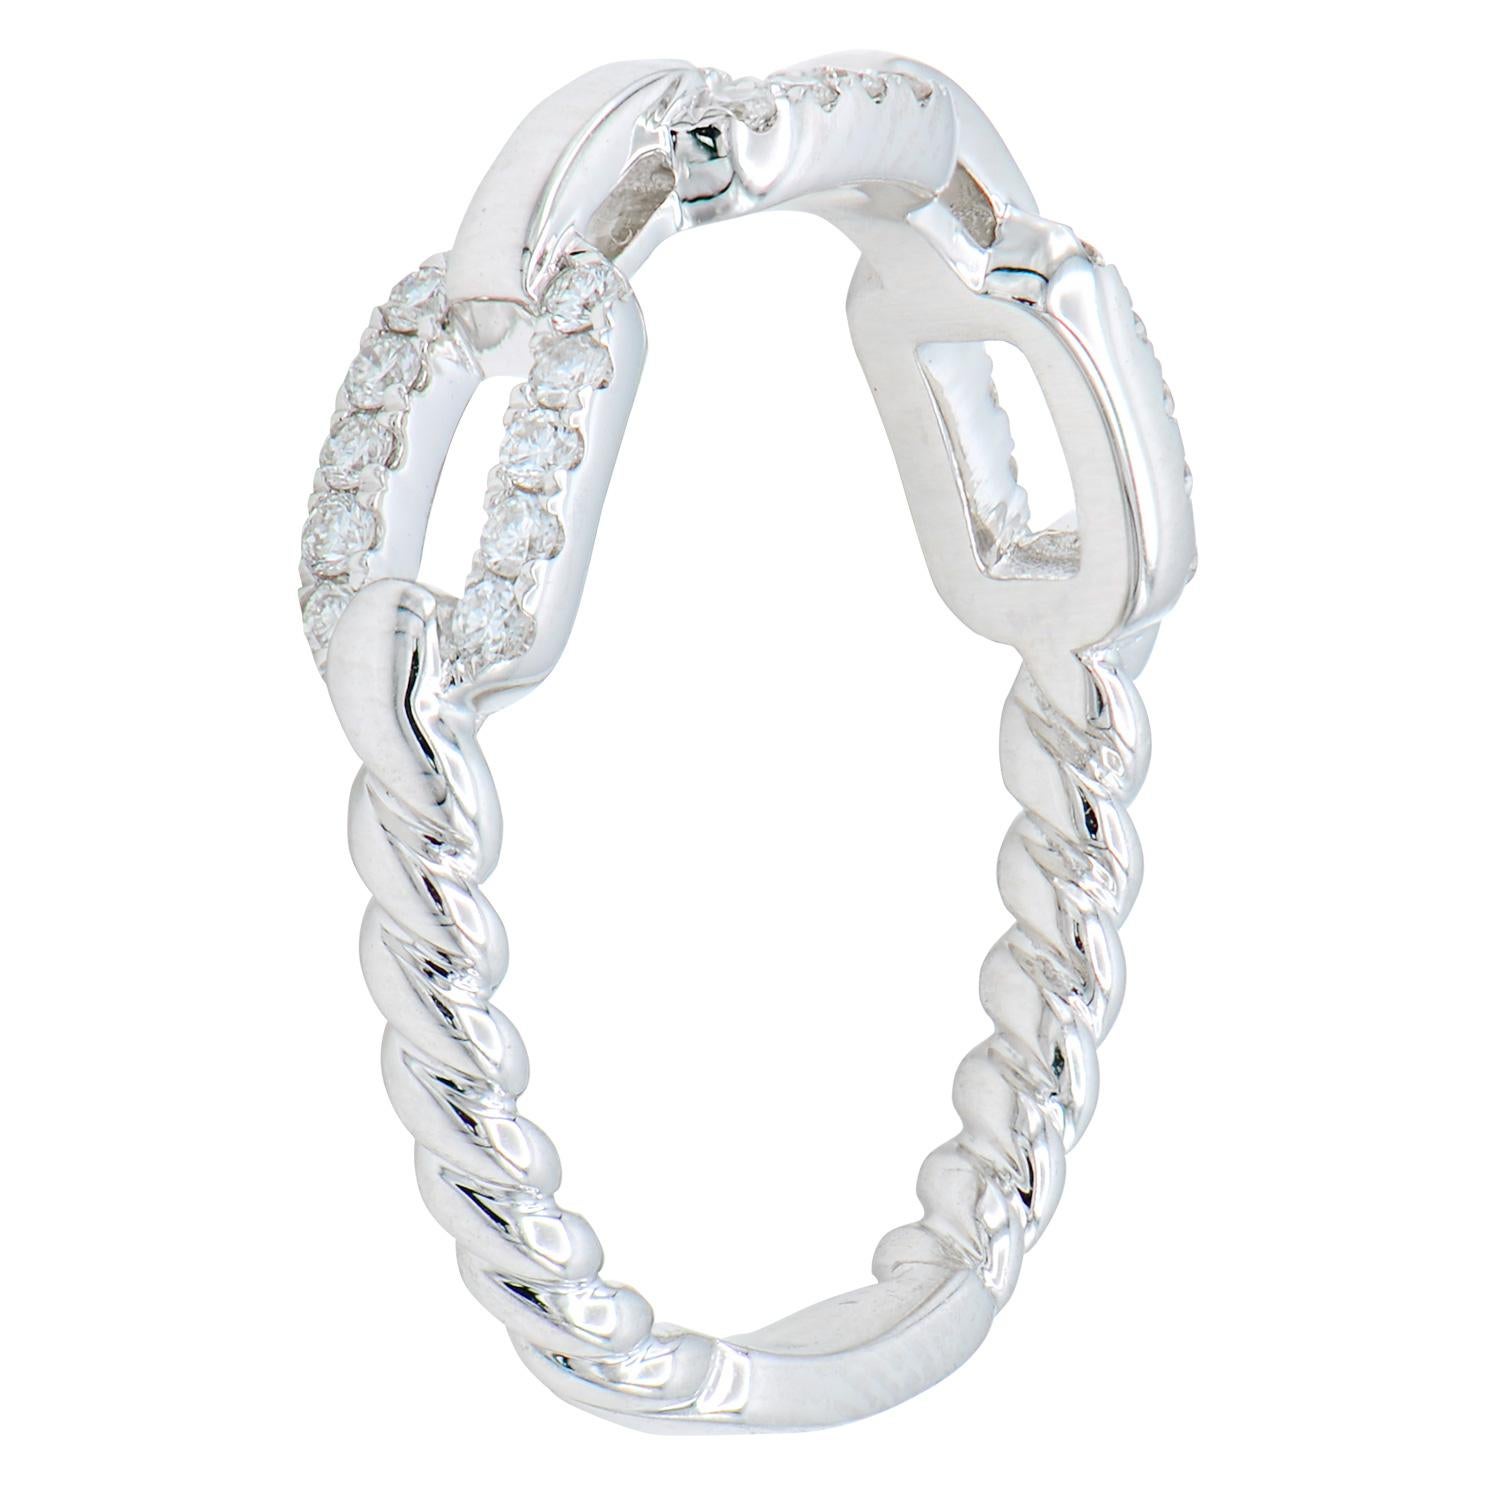 Dieser moderne, witzige Ring ist aus 2,9 Gramm 18 Karat Weißgold gefertigt. Die Rückseite des Rings ist mit einem Twist-Effekt versehen, die Vorderseite mit einem Kettenglied-Design. Der Ring enthält 30 runde Diamanten der Farbe G VS2 mit insgesamt